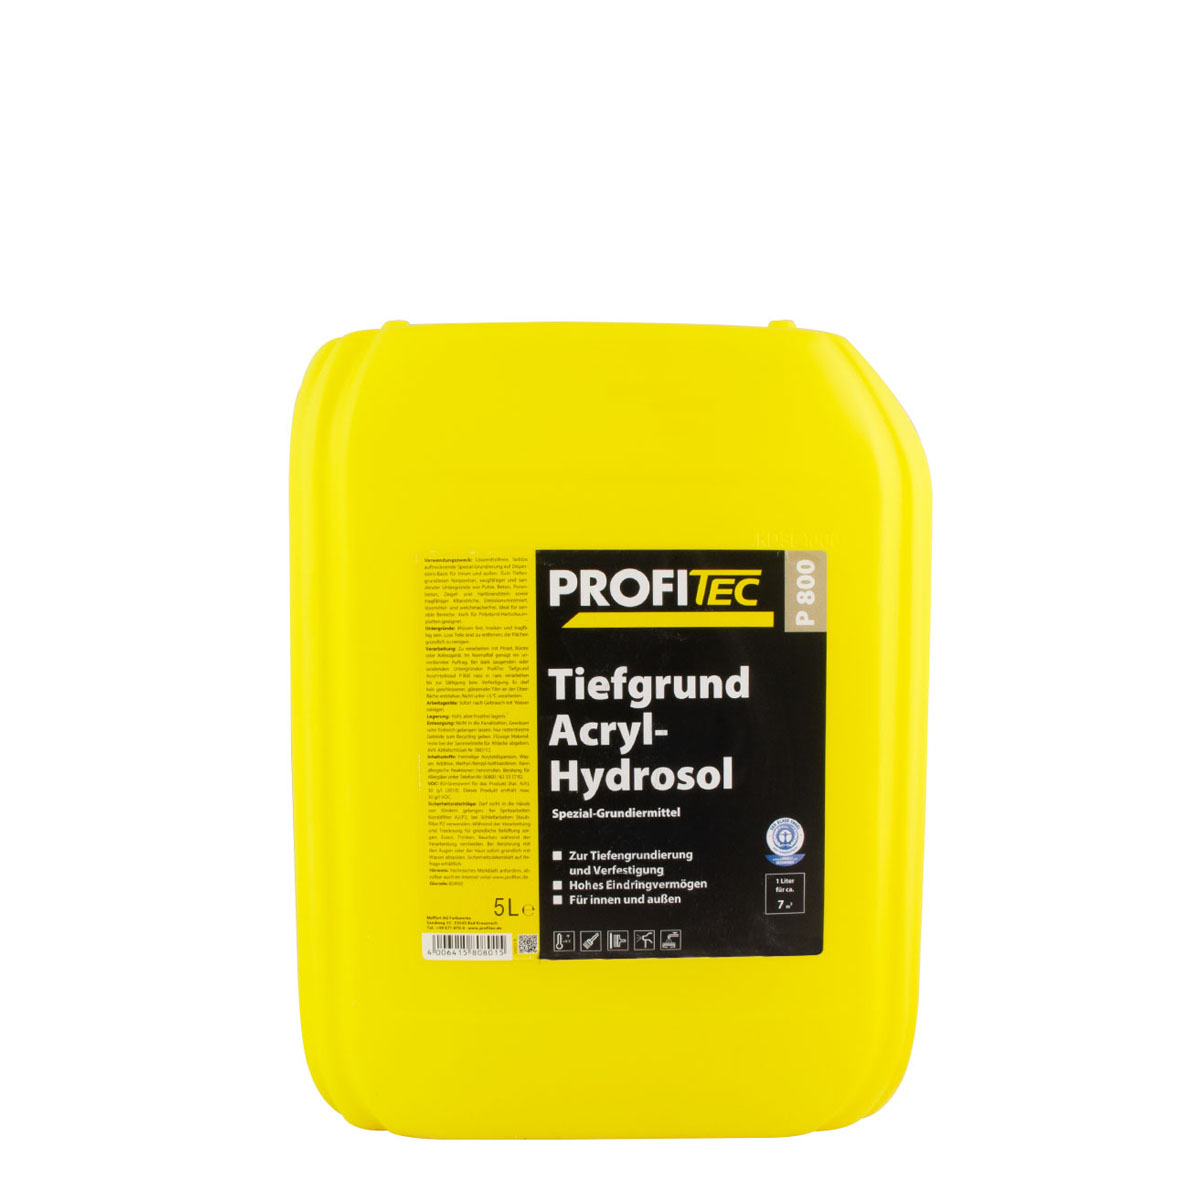 Profitec P800 Tiefgrund Acryl-Hydrosol 5L, Tiefengrund